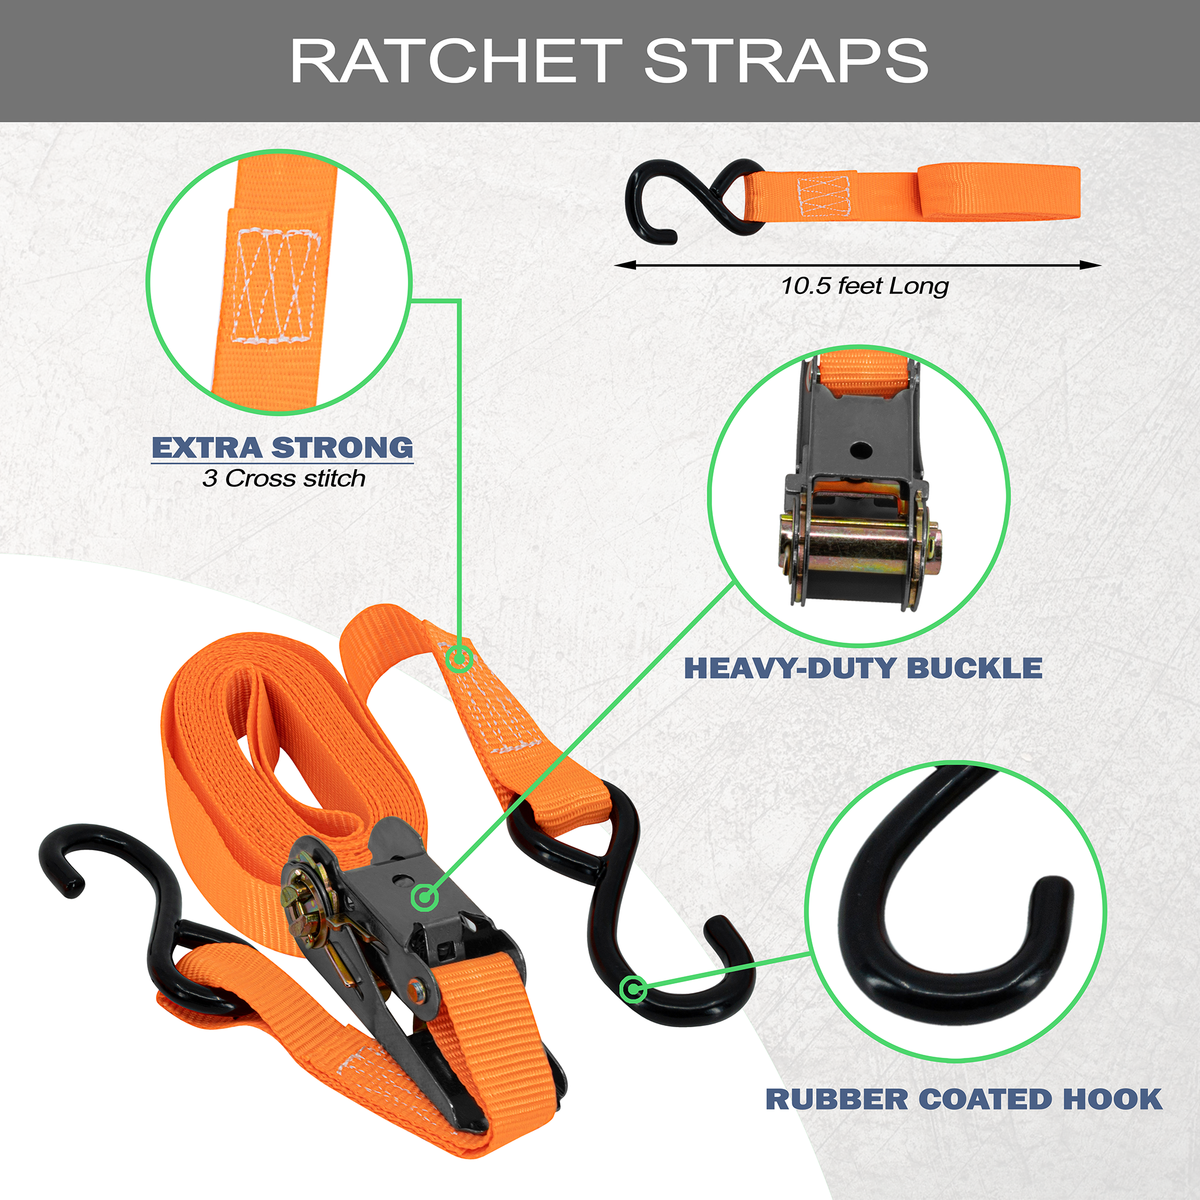 Ratchet Strap Details